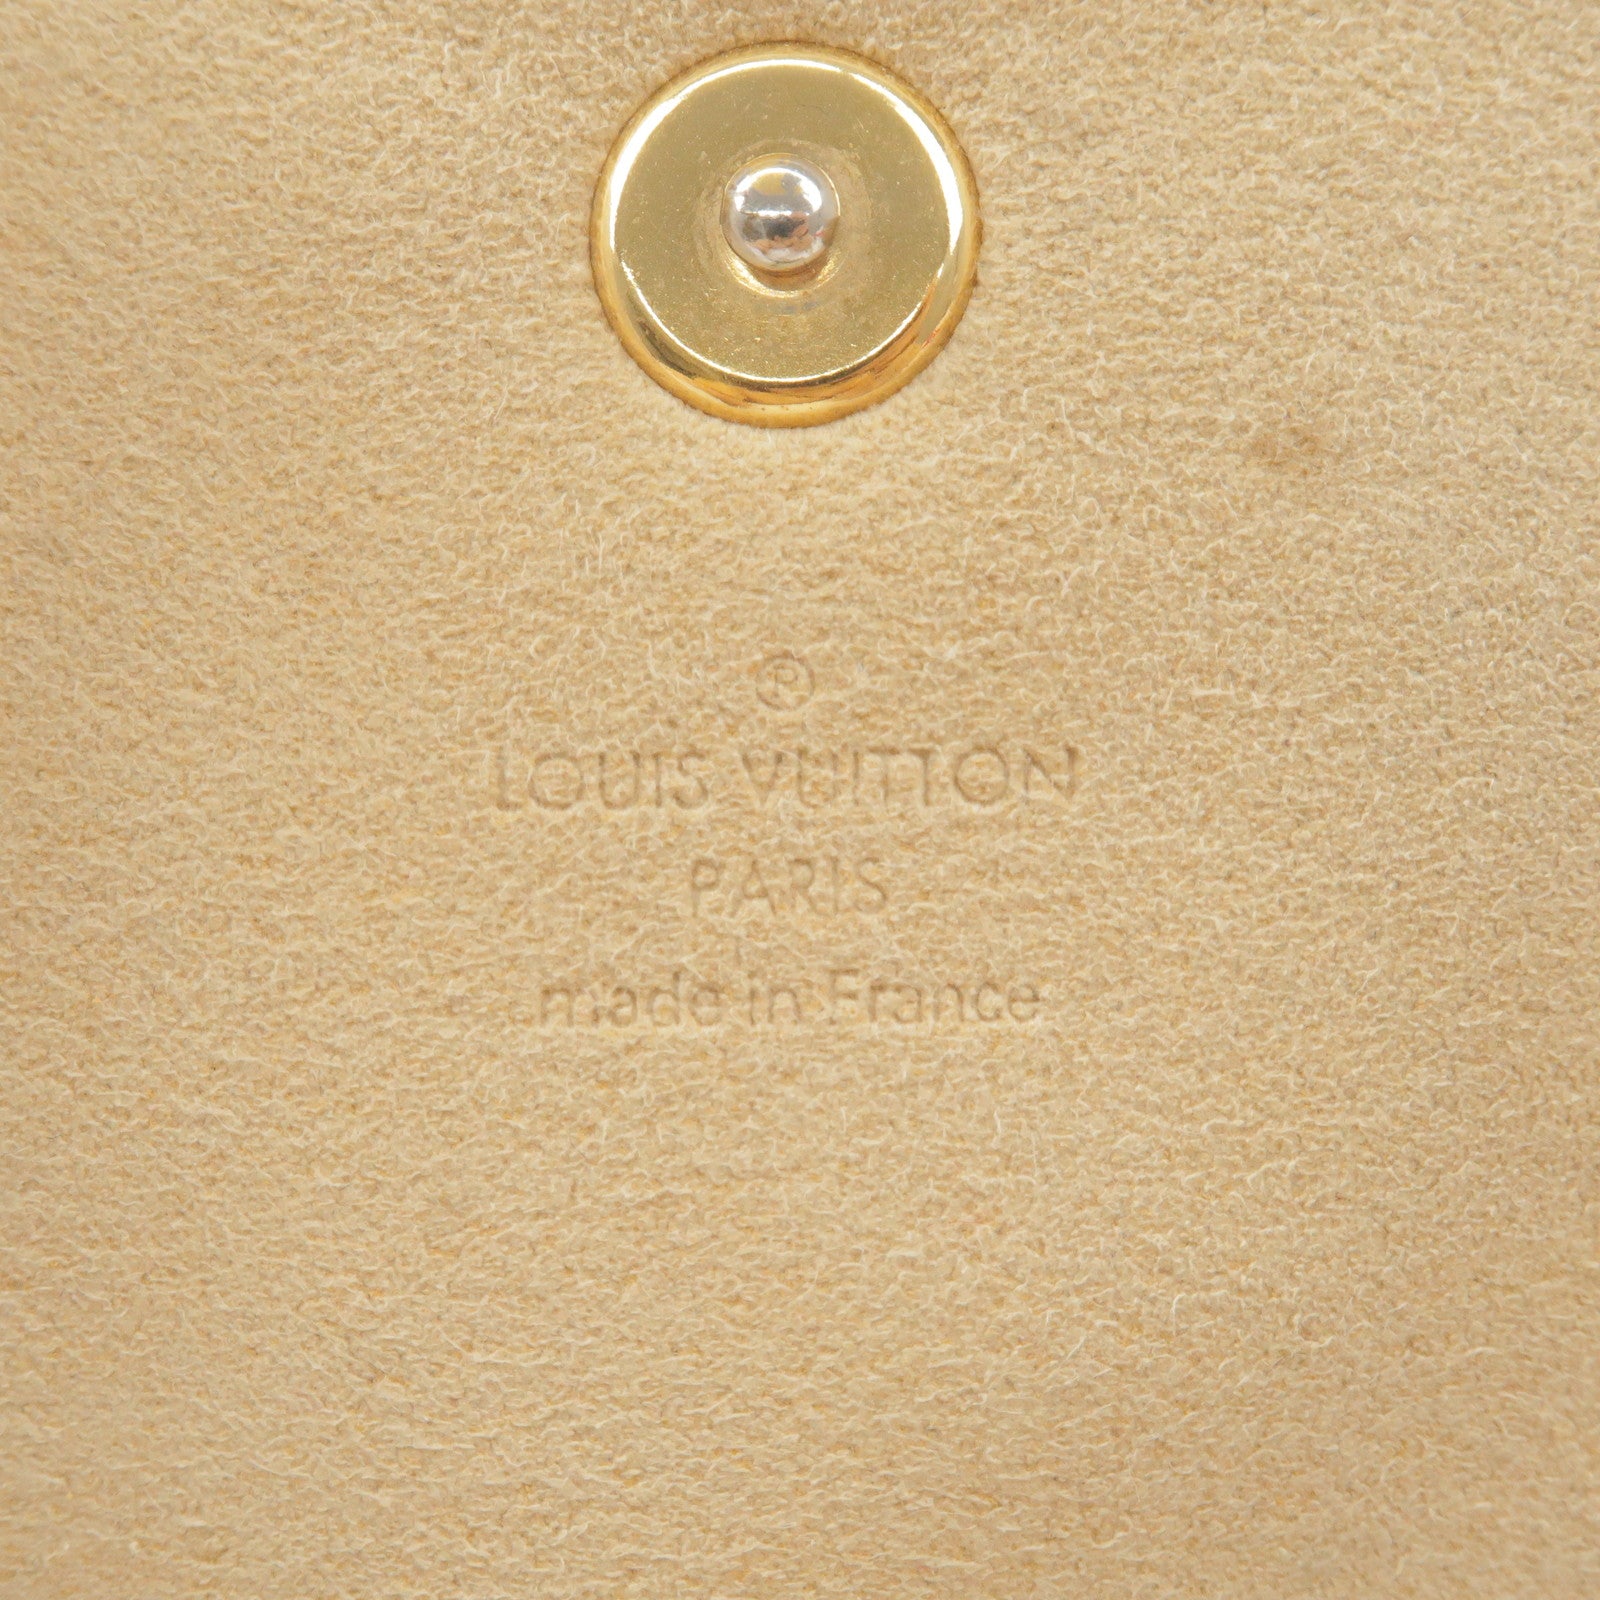 LOUIS VUITTON Monogram Pochette Cancun Shoulder Bag M60018 LV Auth